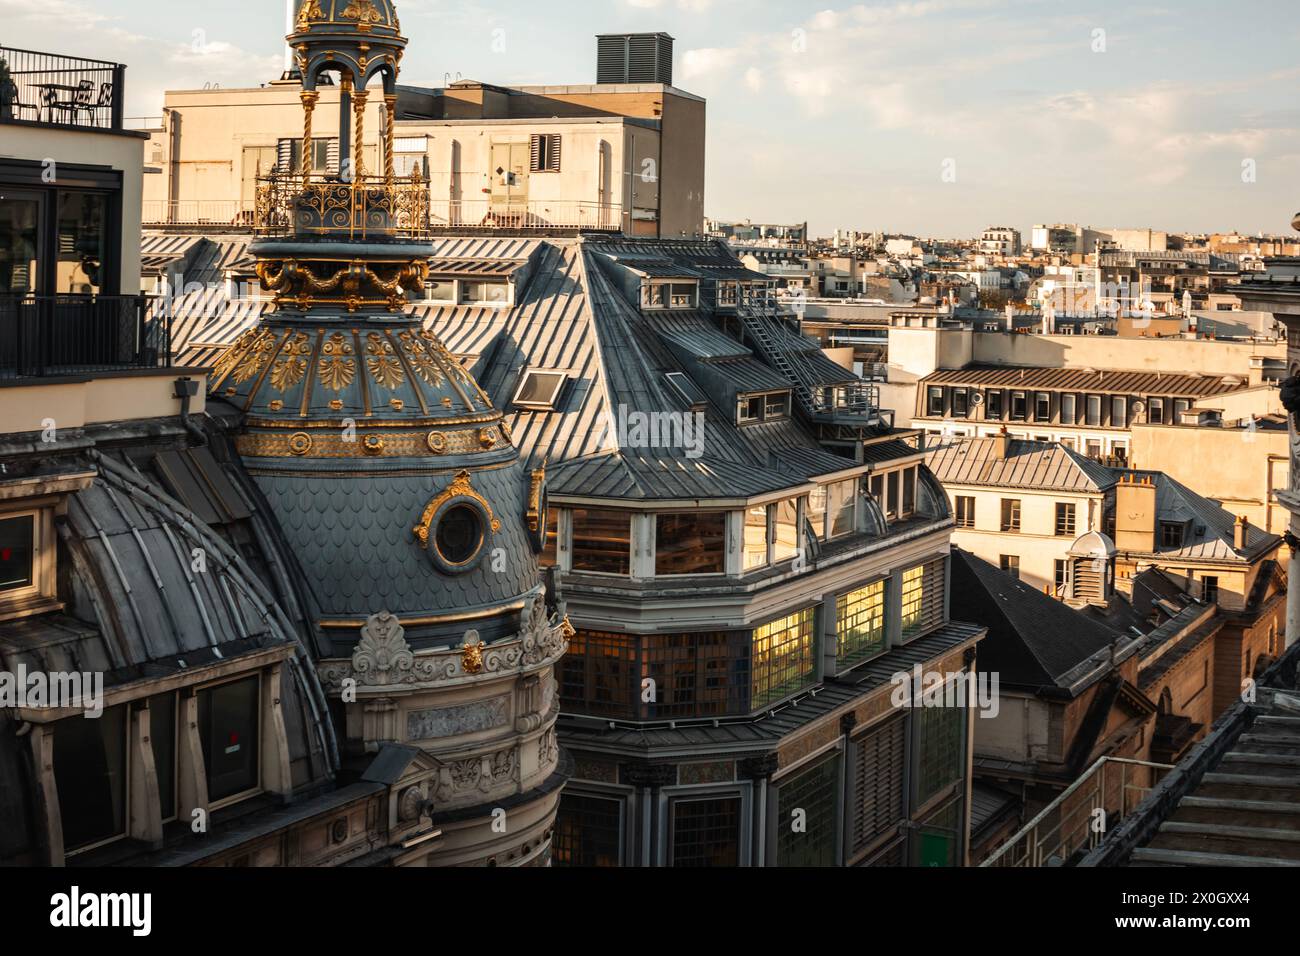 Dachblick auf das Wohngebäude von Printemps Haussmann in Paris, Frankreich. Goldene Stunde. Romantischer Sonnenuntergang mit wunderschöner Architektur. Stockfoto